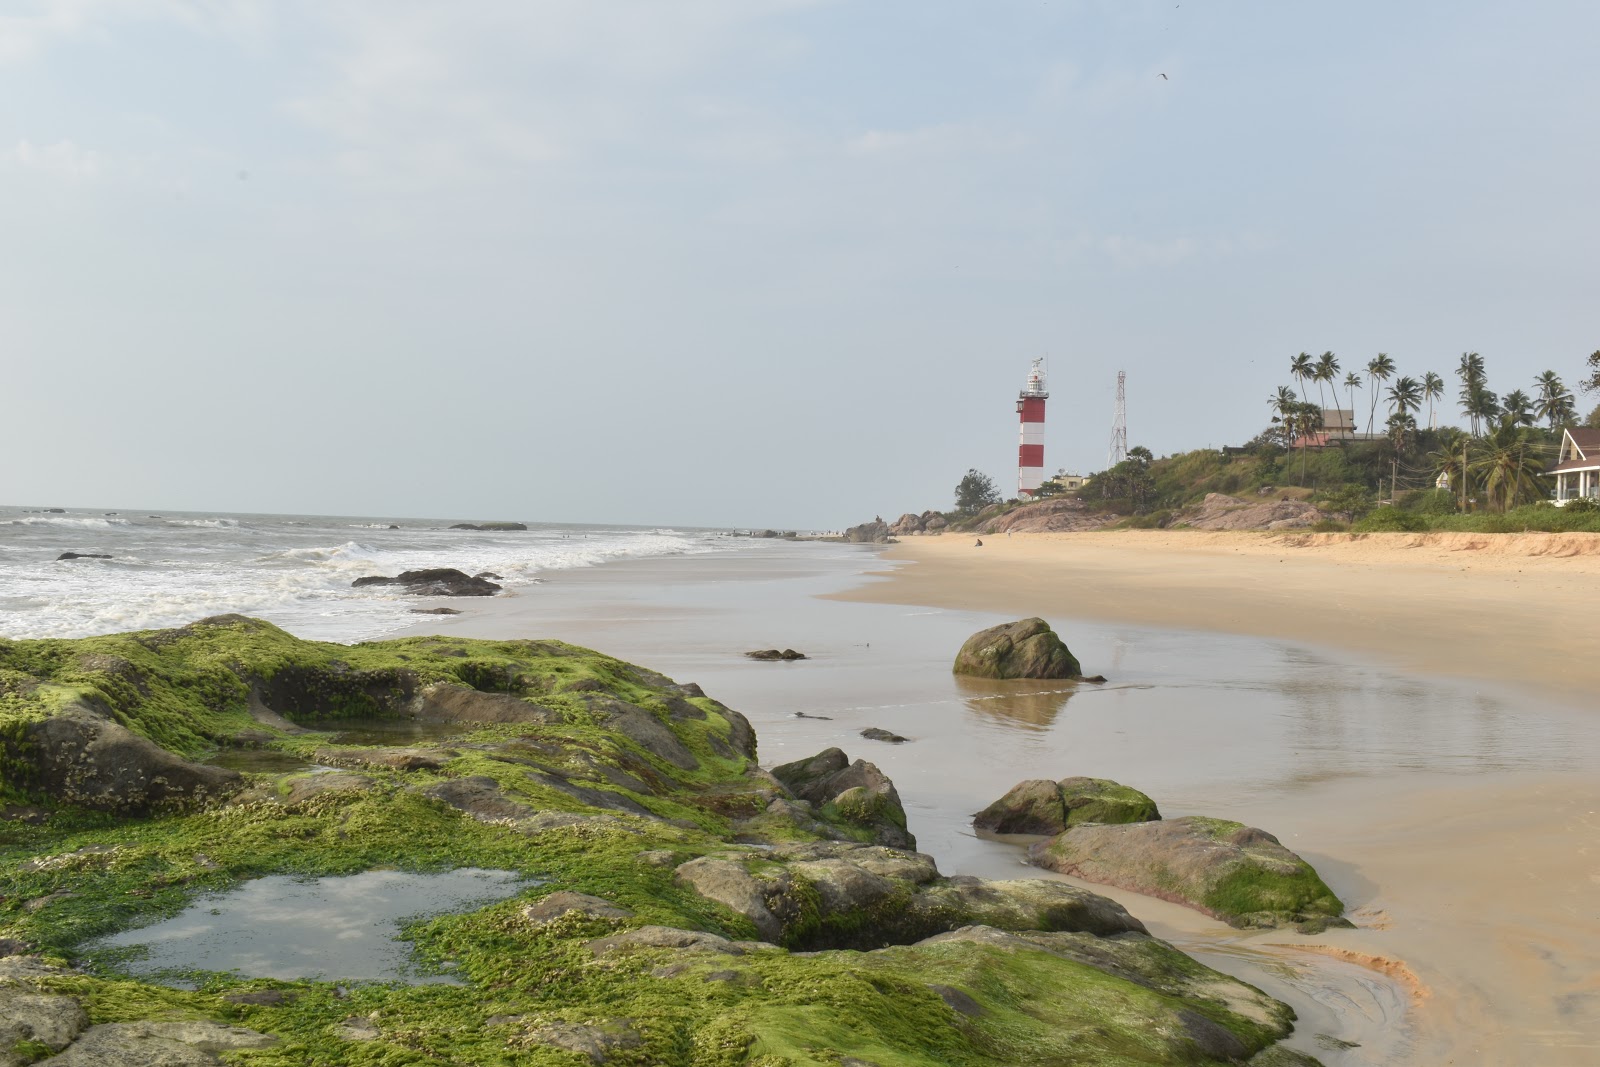 Fotografie cu Suratkal Beach zonele de facilități